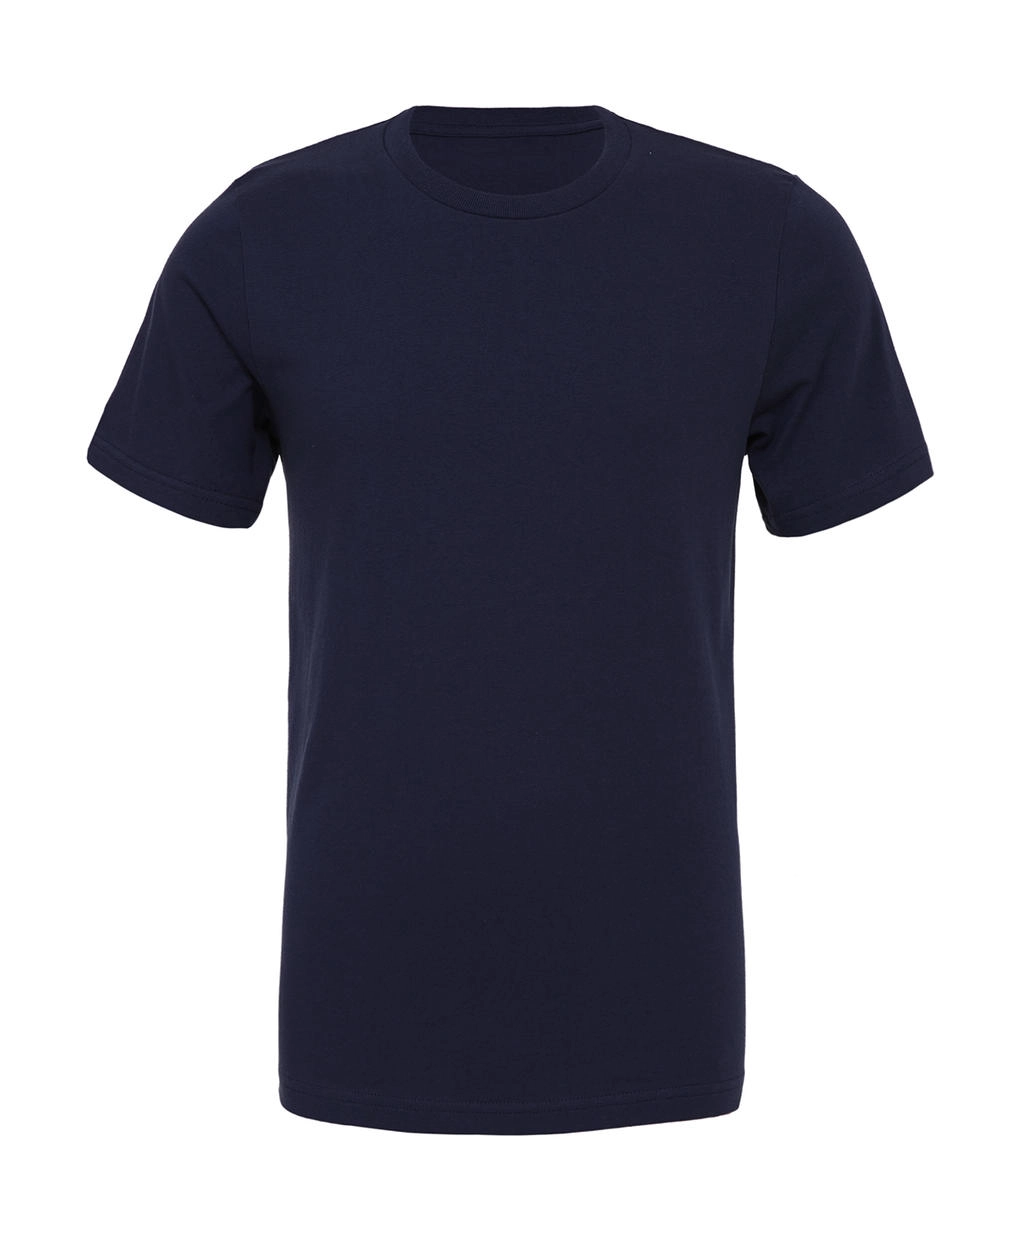 Unisex Poly-Cotton T-Shirt zum Besticken und Bedrucken in der Farbe Navy Marble mit Ihren Logo, Schriftzug oder Motiv.